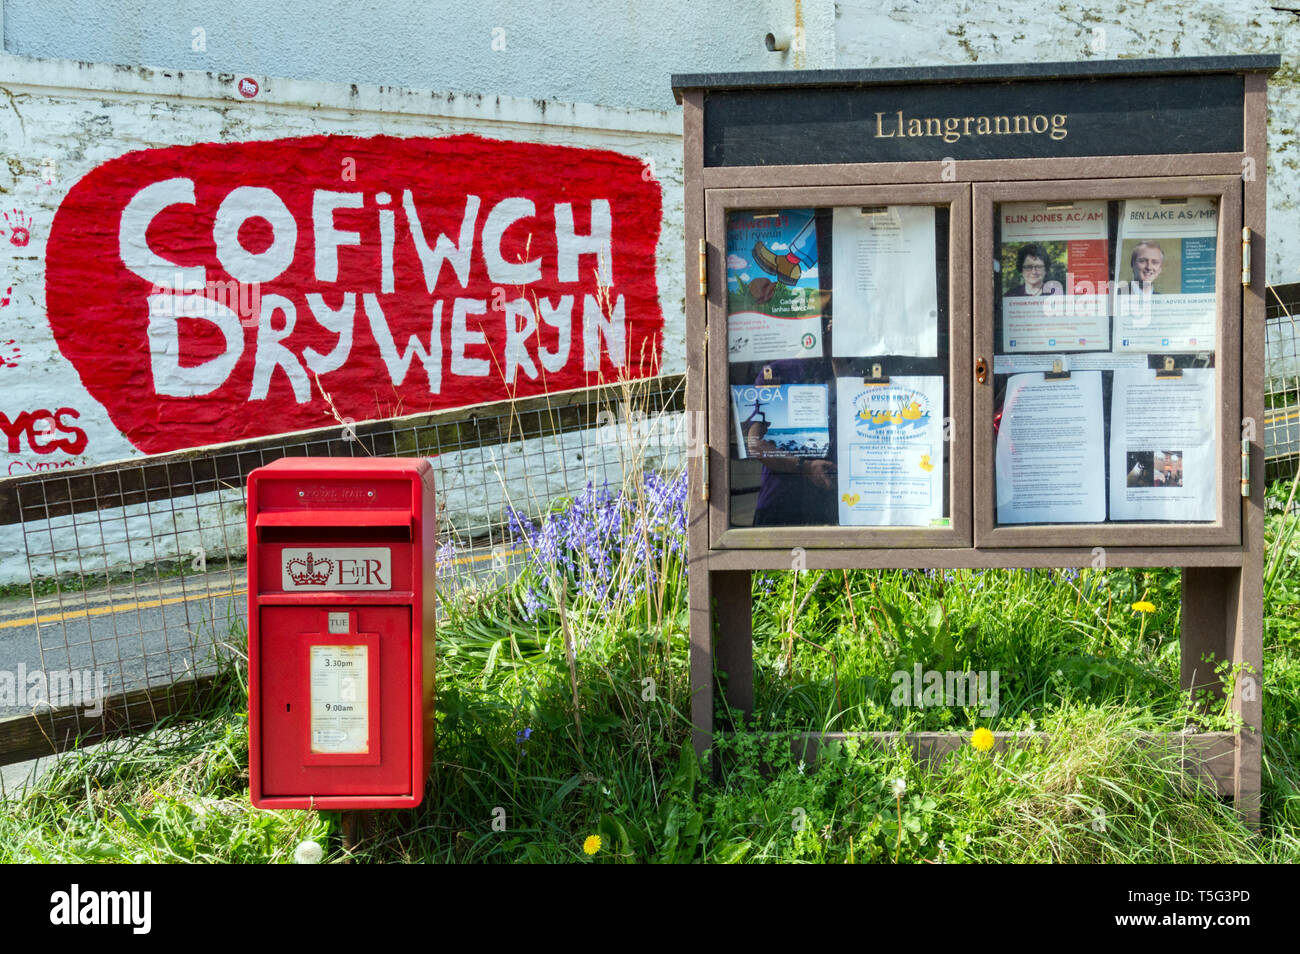 Cofiwch Dryweryn graffiti tribute at Llangrannog, Ceredigion, Wales, (Engl. 'Remember Tryweryn') April 2019 Stock Photo